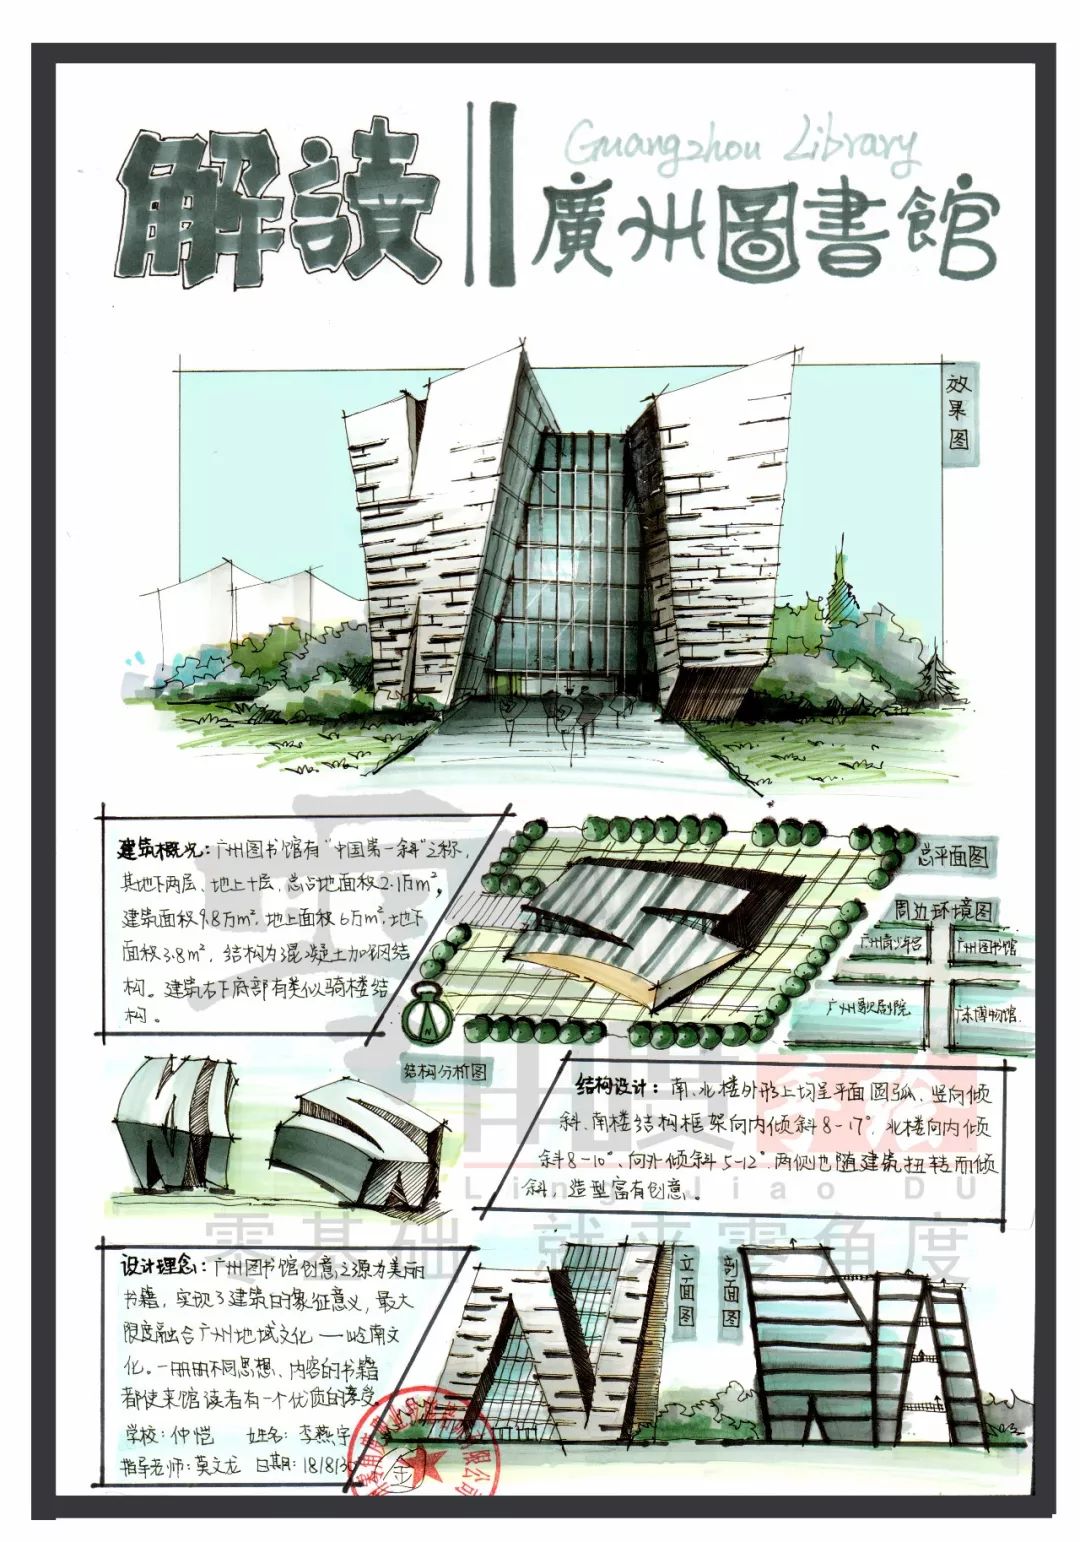 文末,我们邀请你也将你理解中的【广州图书馆】用手绘解读的形式表现